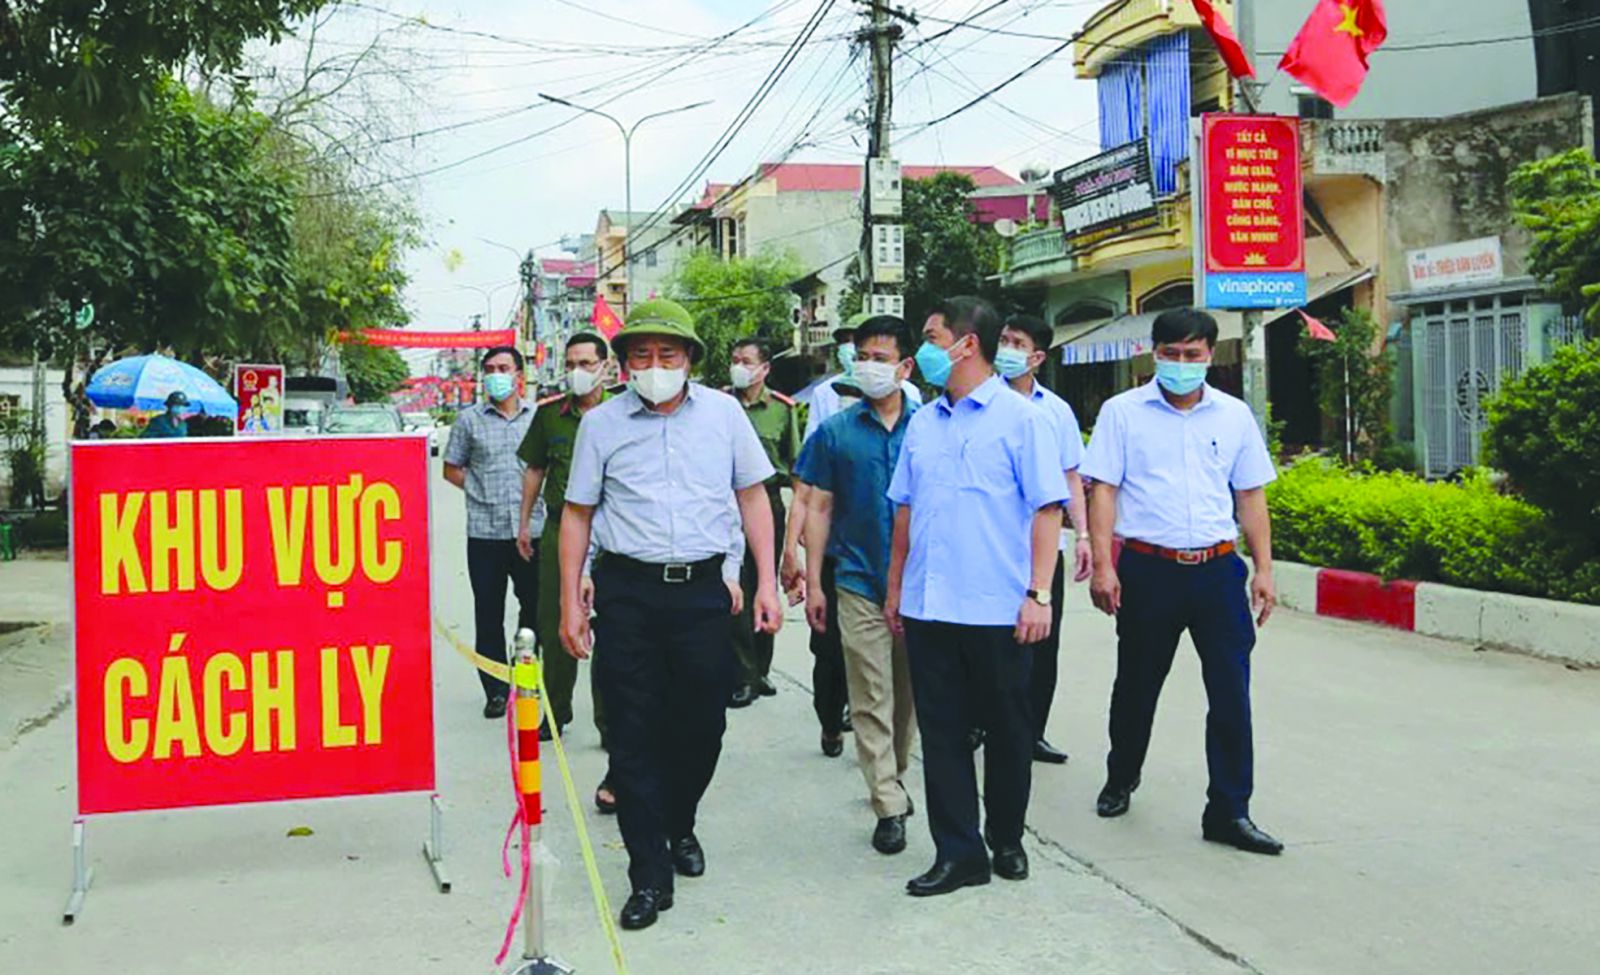  Ông Hồ Tiến Thiệu – Phó Bí thư Tỉnh ủy, Chủ tịch UBND tỉnh Lạng Sơn đi kiểm tra công tác phòng dịch tại huyện Tràng Định.